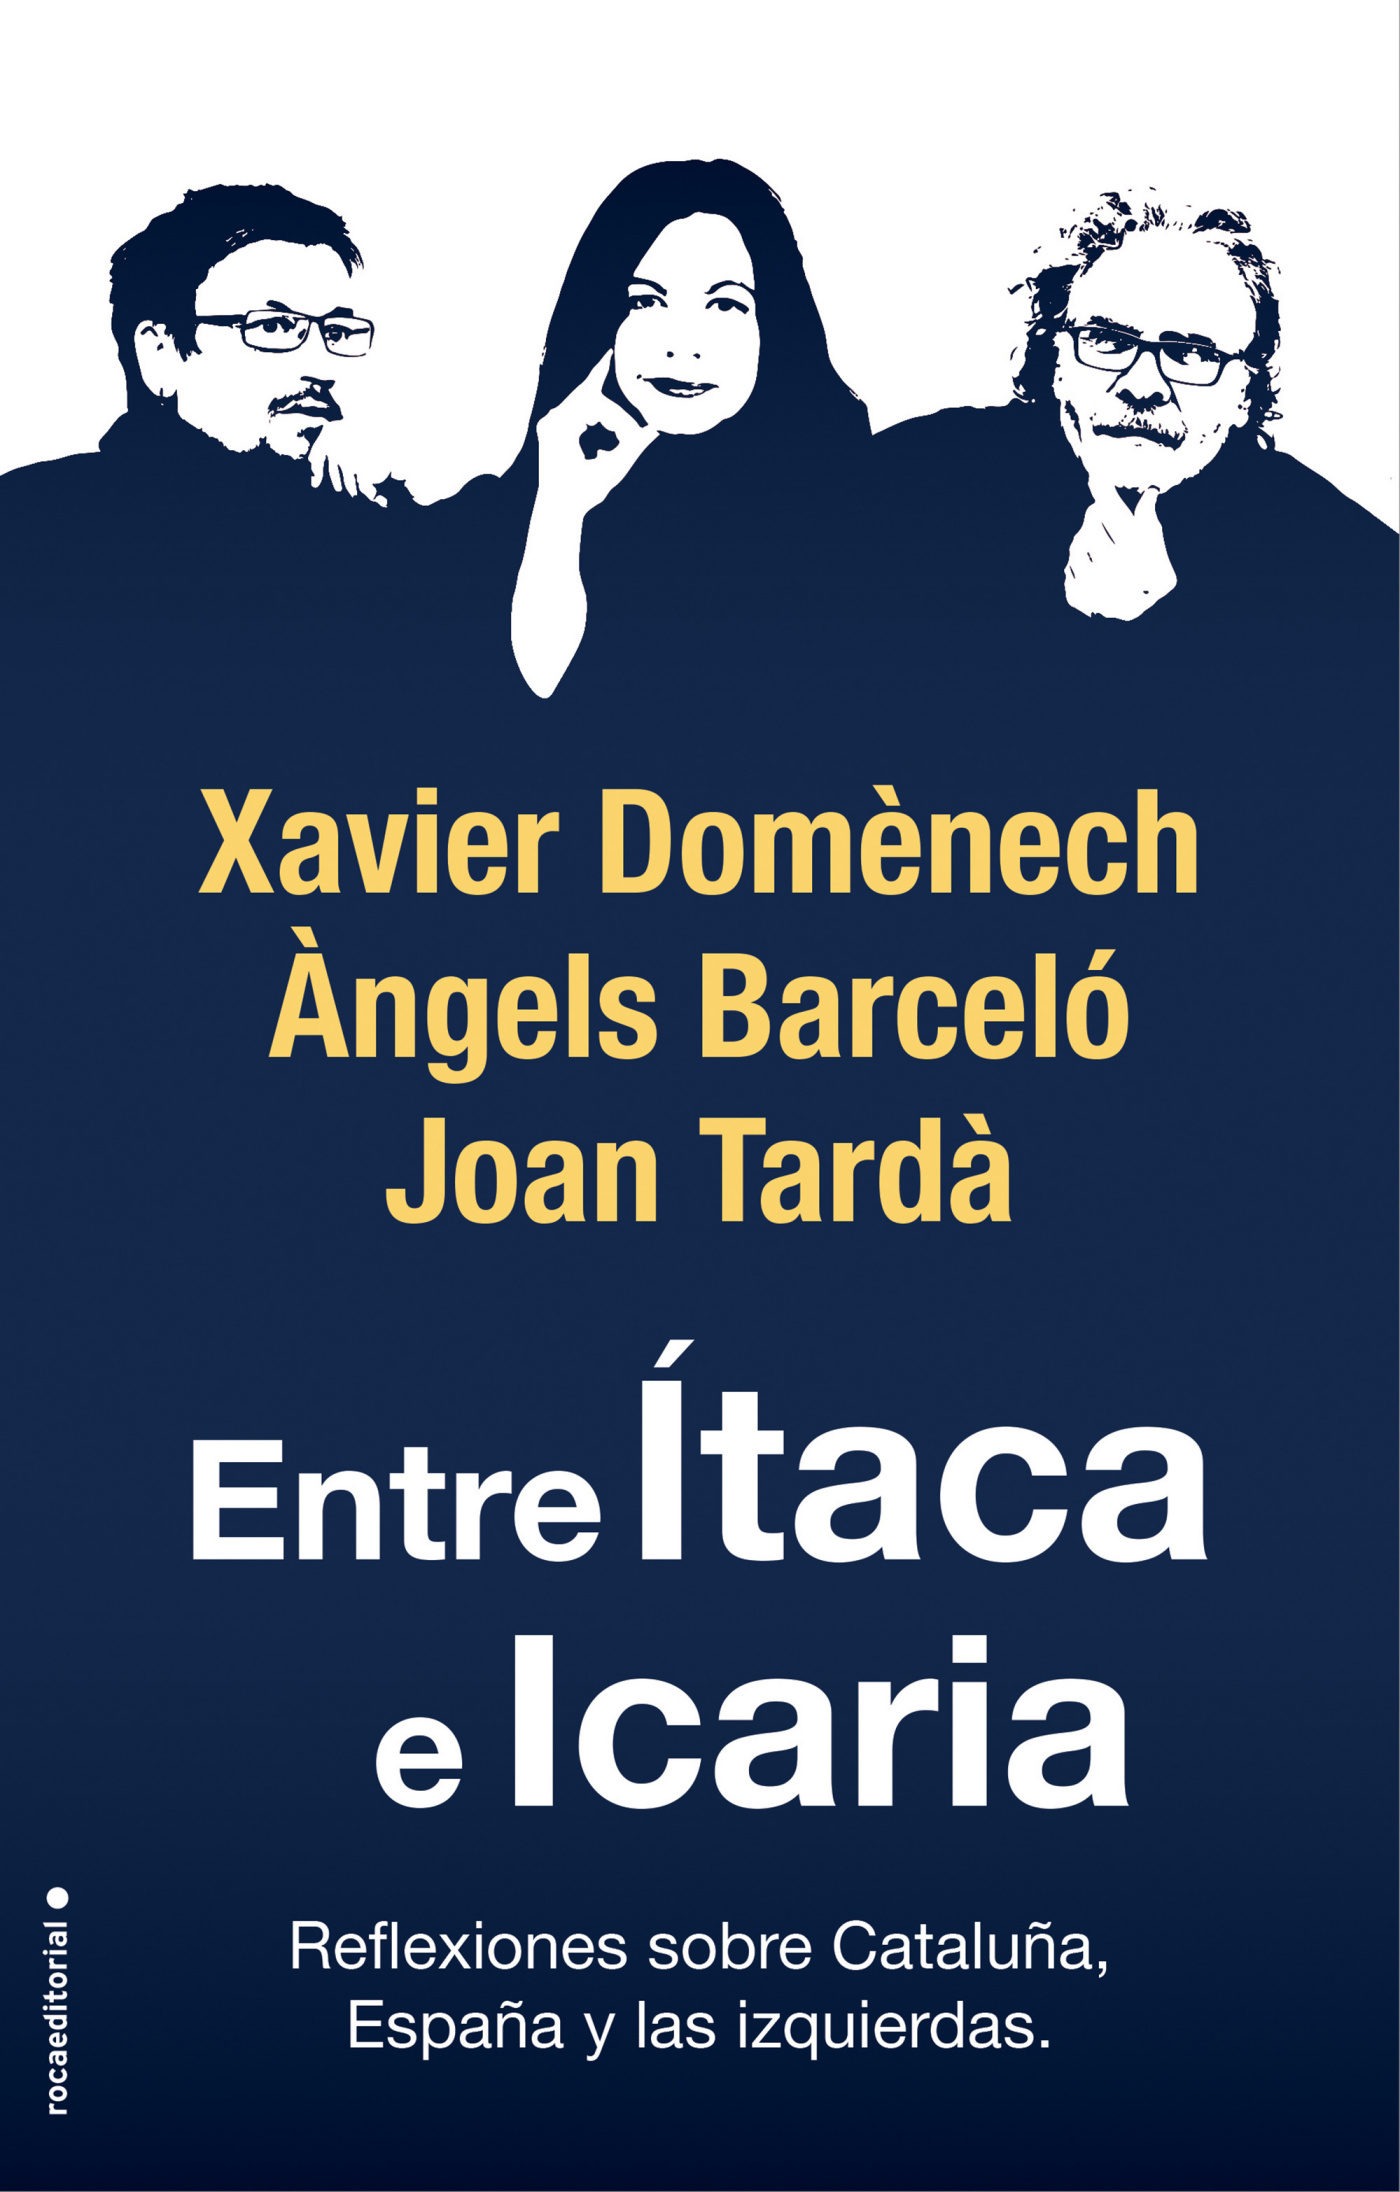 Portada del libro ENTRE ÍTACA E ICARIA. Reflexiones sobre Cataluña, España y las izquierdas